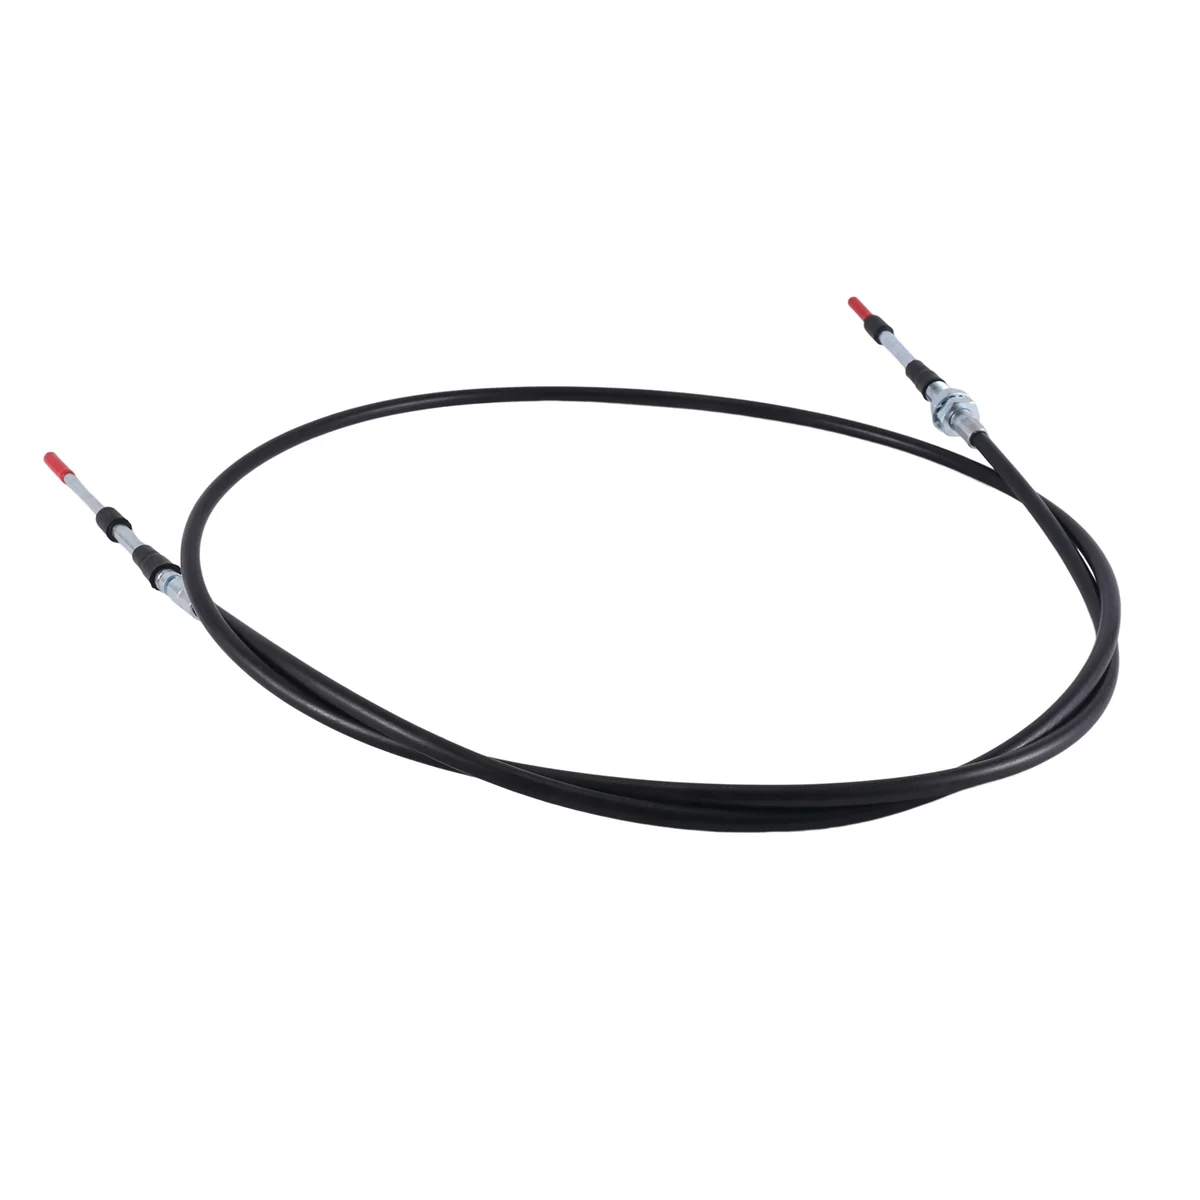 6675668 Cable del Acelerador para Bobcat S100,S220,S250,S300,S330,MT50,341 del Acelerador Cable del Acelerador . ' - ' . 2